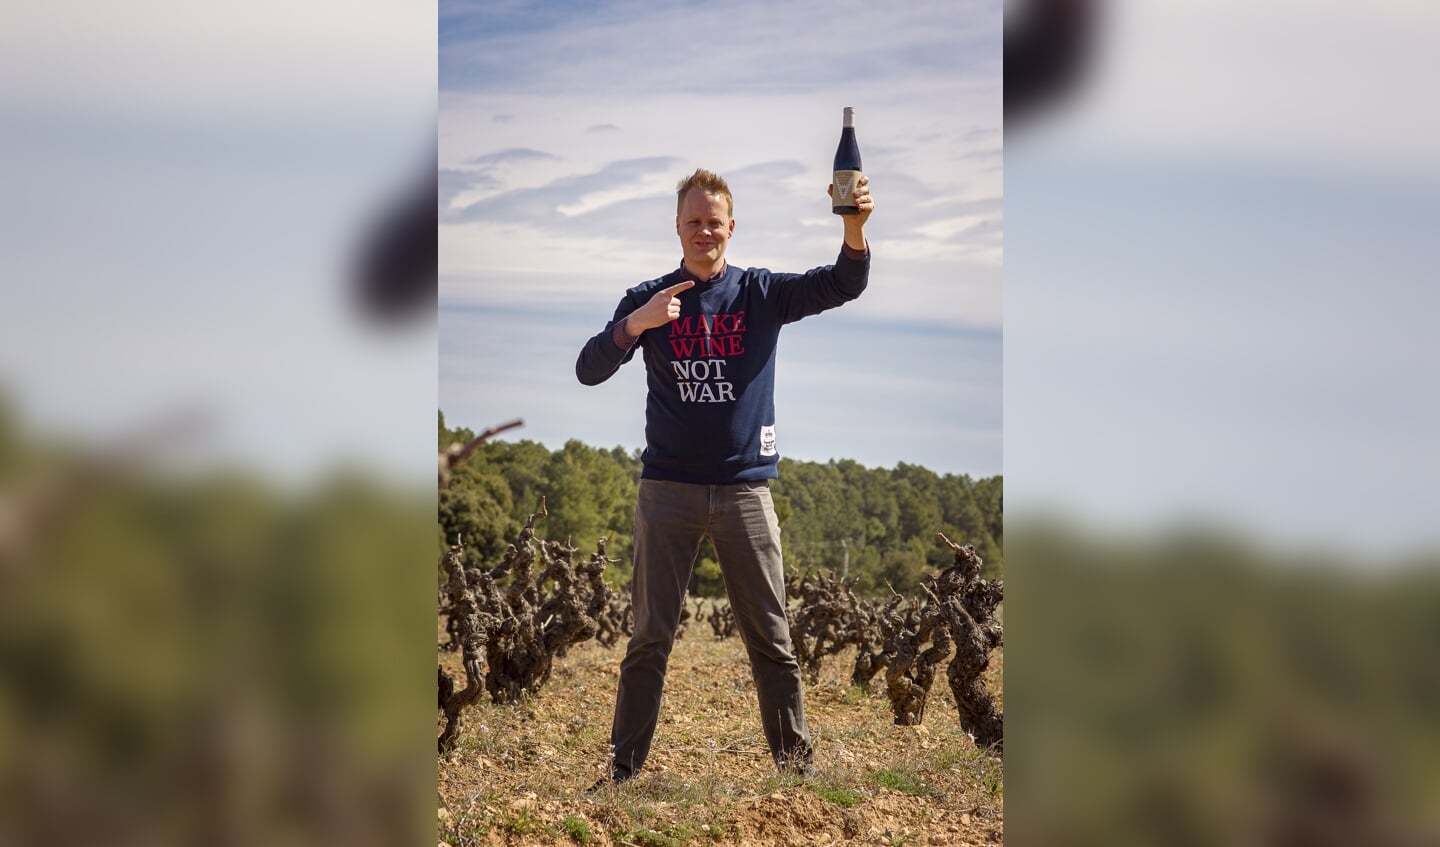 De Zutphense wijnmaker werd verkozen tot Meest Inspirerende Ondernemer van het jaar.